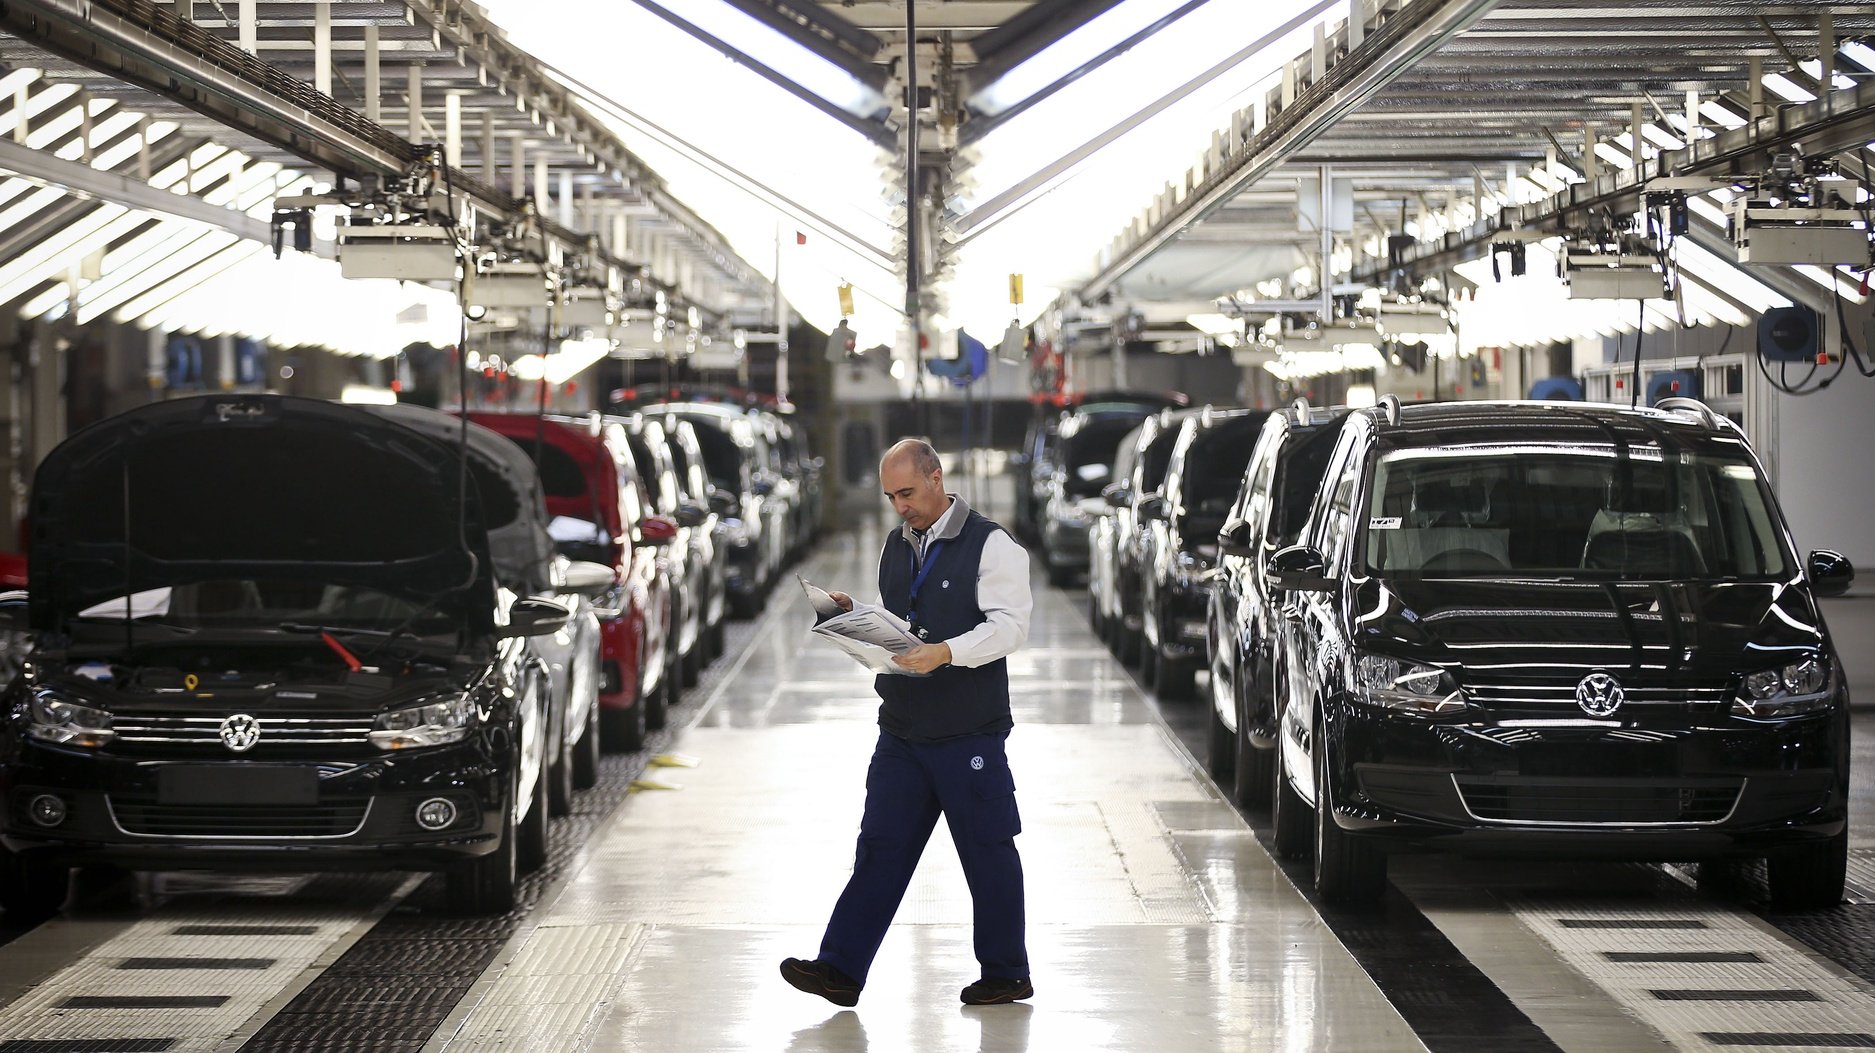 Um trabalhador da fábrica Autoeuropa do grupo alemão Volkswagen passa pela linha de sáida de veículos produzidos numa altura em que se celebram os 20 anos do início da produção da Autoeuropa em Portugal, em Palmela, concelho de Setúbal, 26 de abril de 2015. (ACOMPANHA TEXTO) MÁRIO CRUZ/LUSA